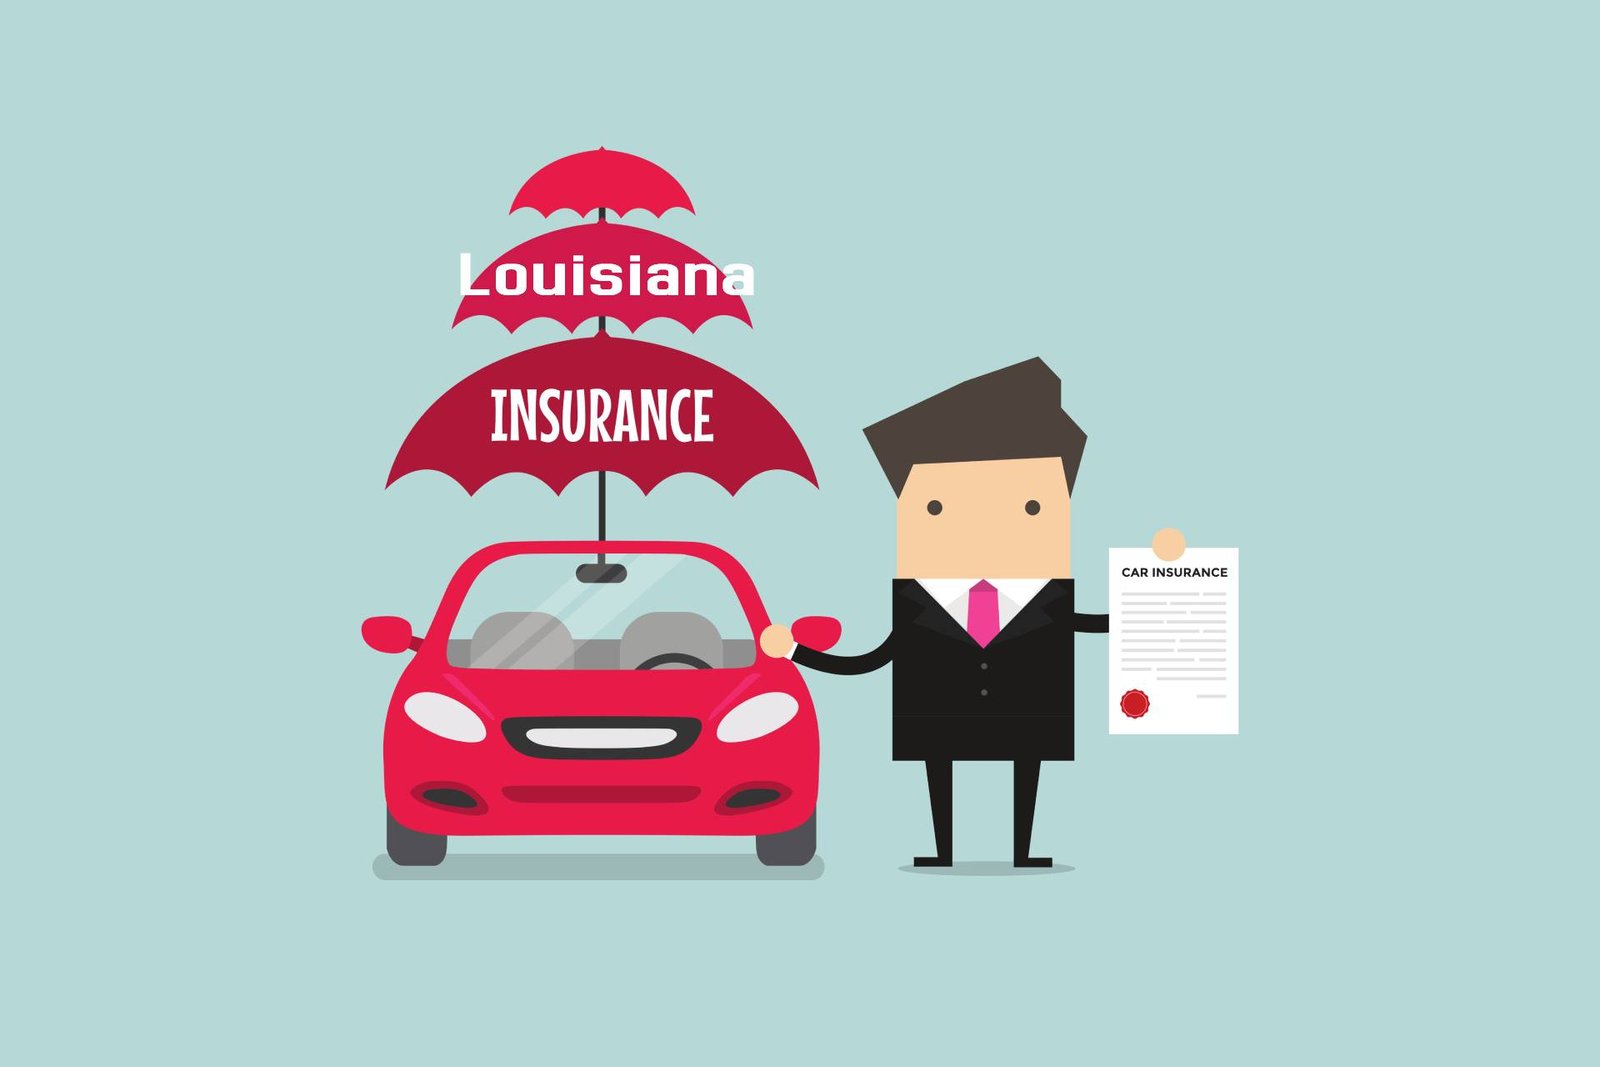 Car insurance in Louisiana